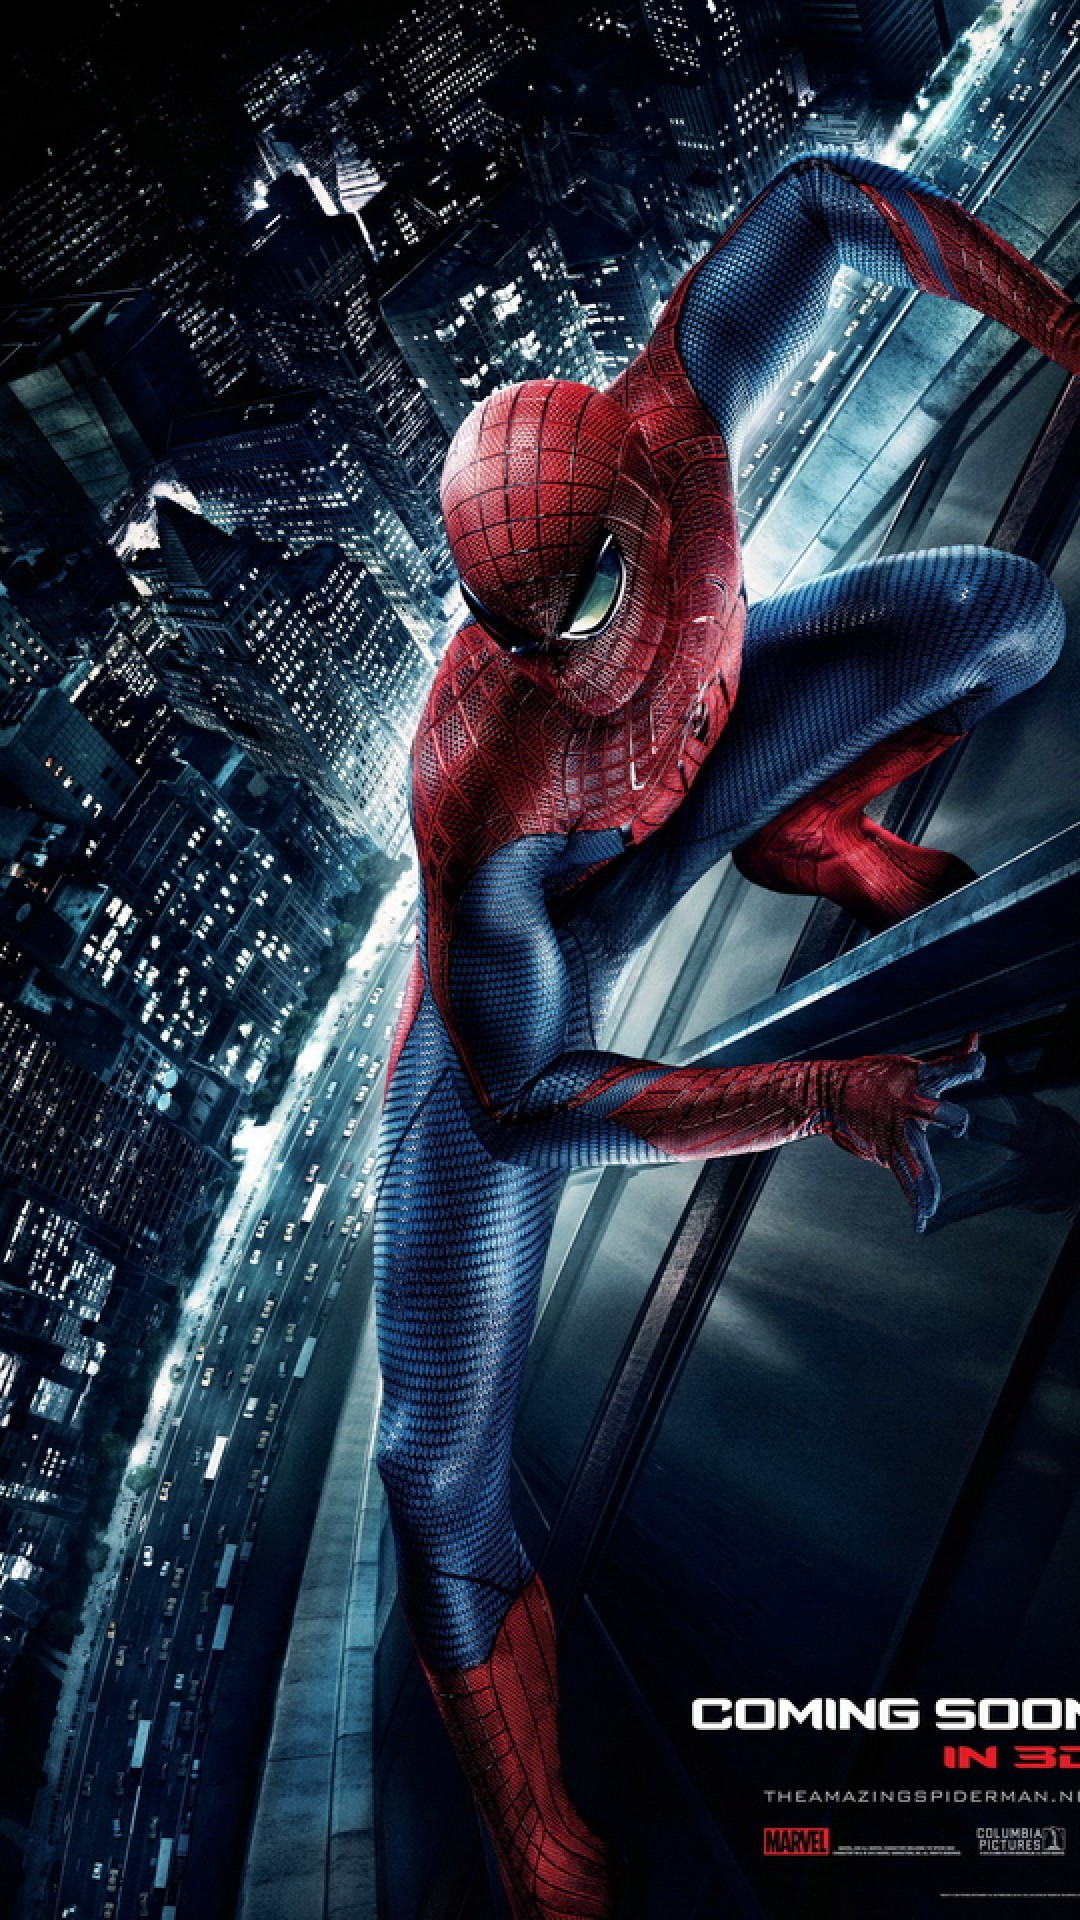 fond d'écran en direct spiderman,homme araignée,personnage fictif,super héros,oeuvre de cg,jeu pc